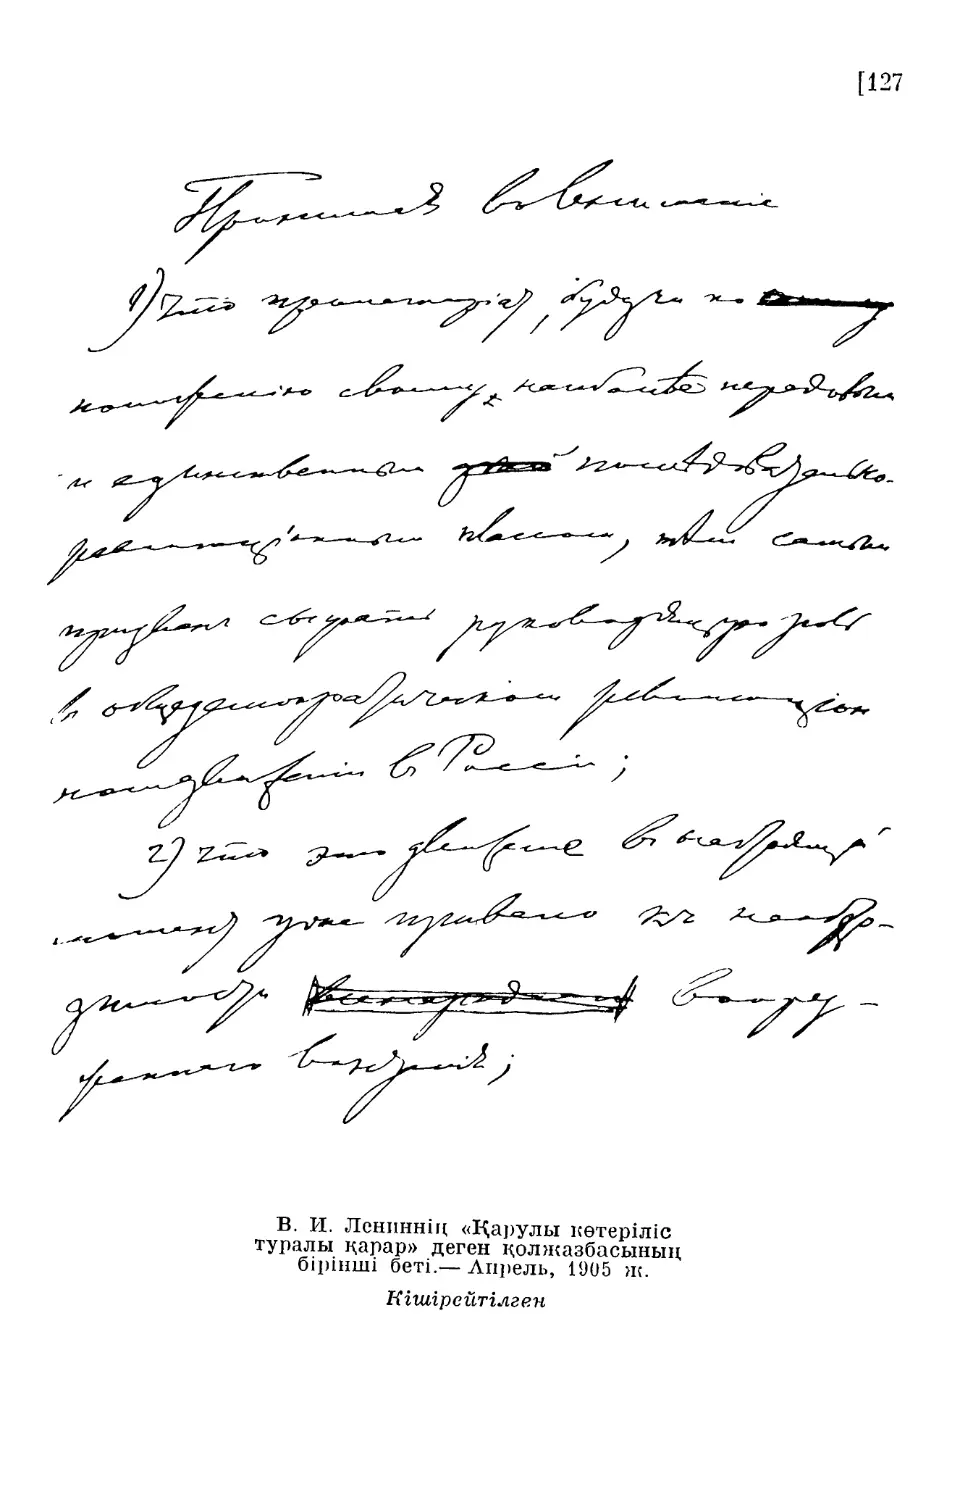 В. И. Лениннің «Қарулы көтеріліс туралы қарар» деген қолжазбасының бірінші беті.— Апрель, 1905 ж.